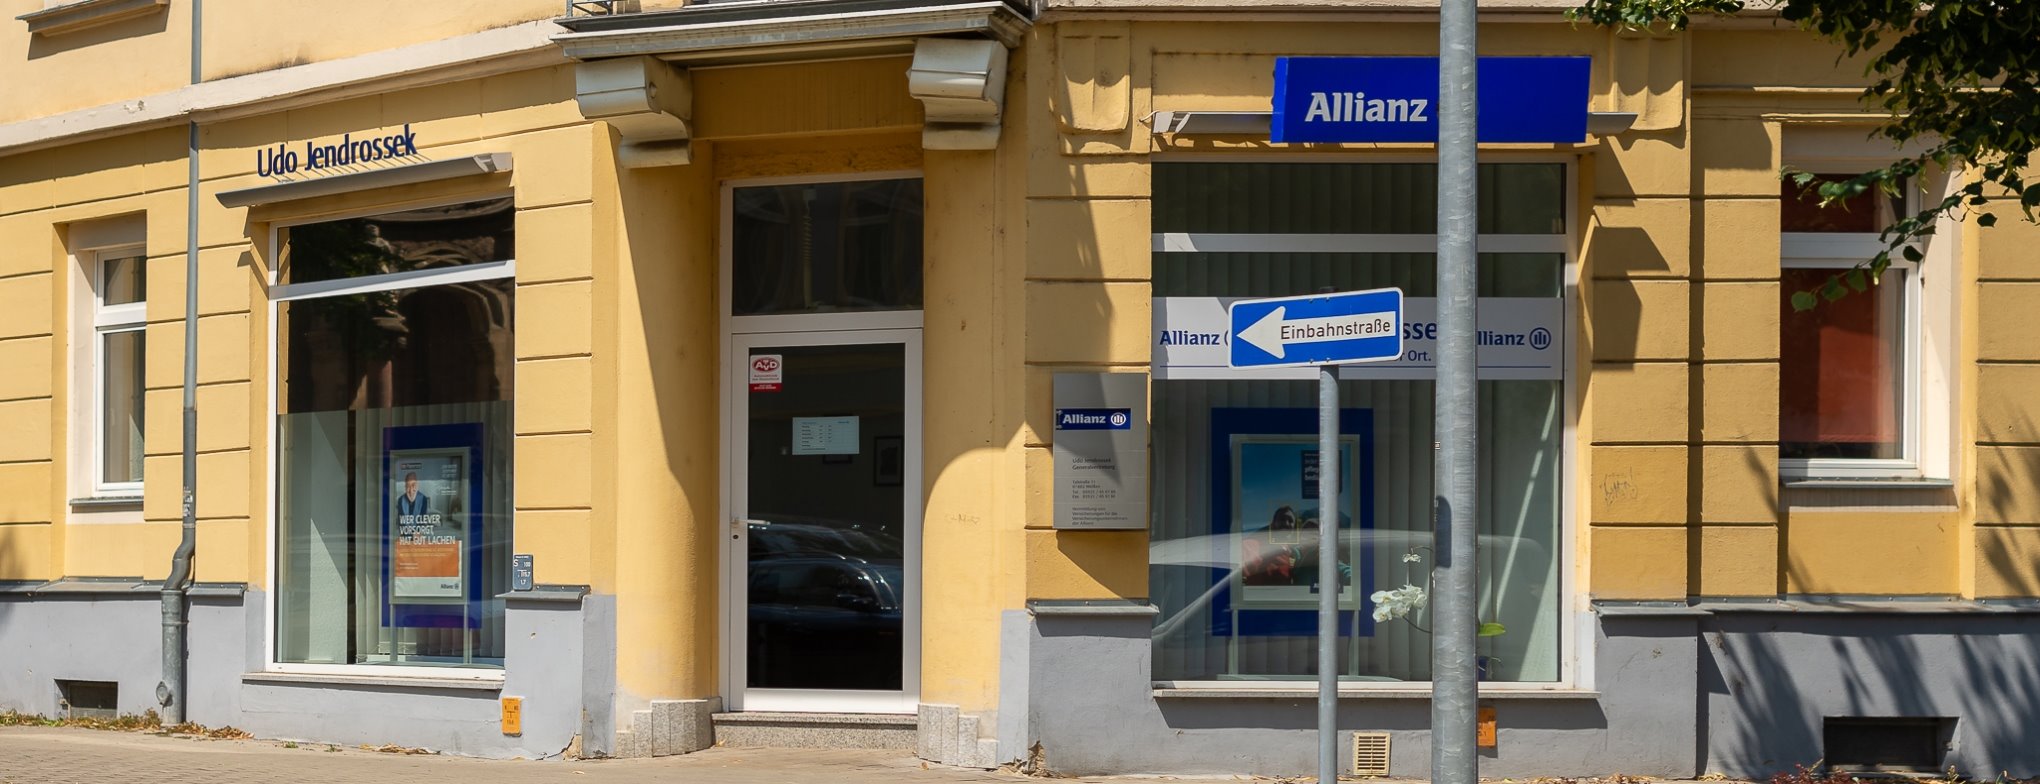 Allianz Versicherung Udo Jendrossek Meißen - Agentur